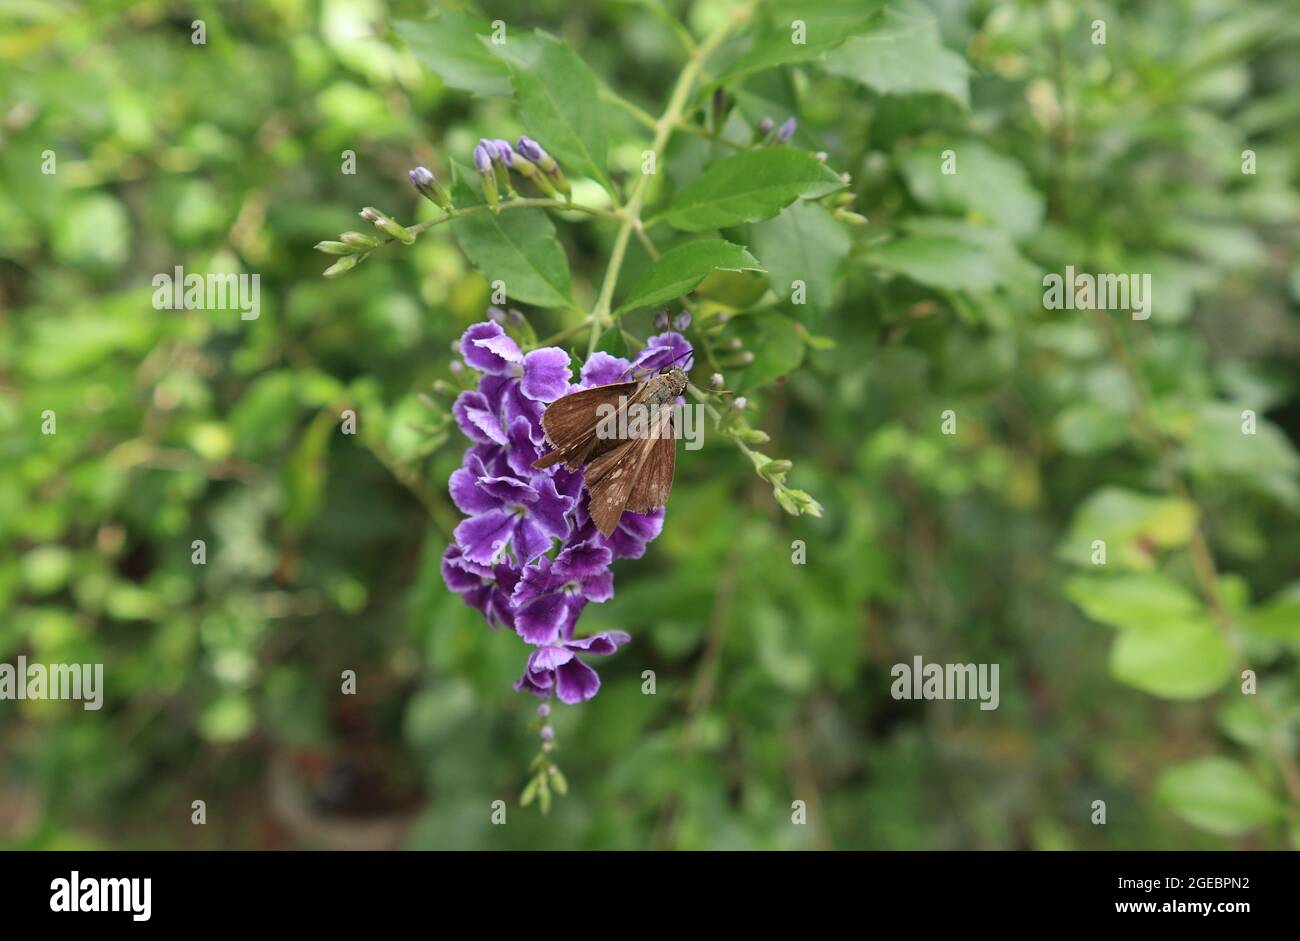 Nahaufnahme eines verbundenen schnellen Schmetterlings mit ausgebreiteten Flügeln auf einem violetten Blütenstrauß sitzend, bereit, Nektar aus einer Blume zu trinken Stockfoto